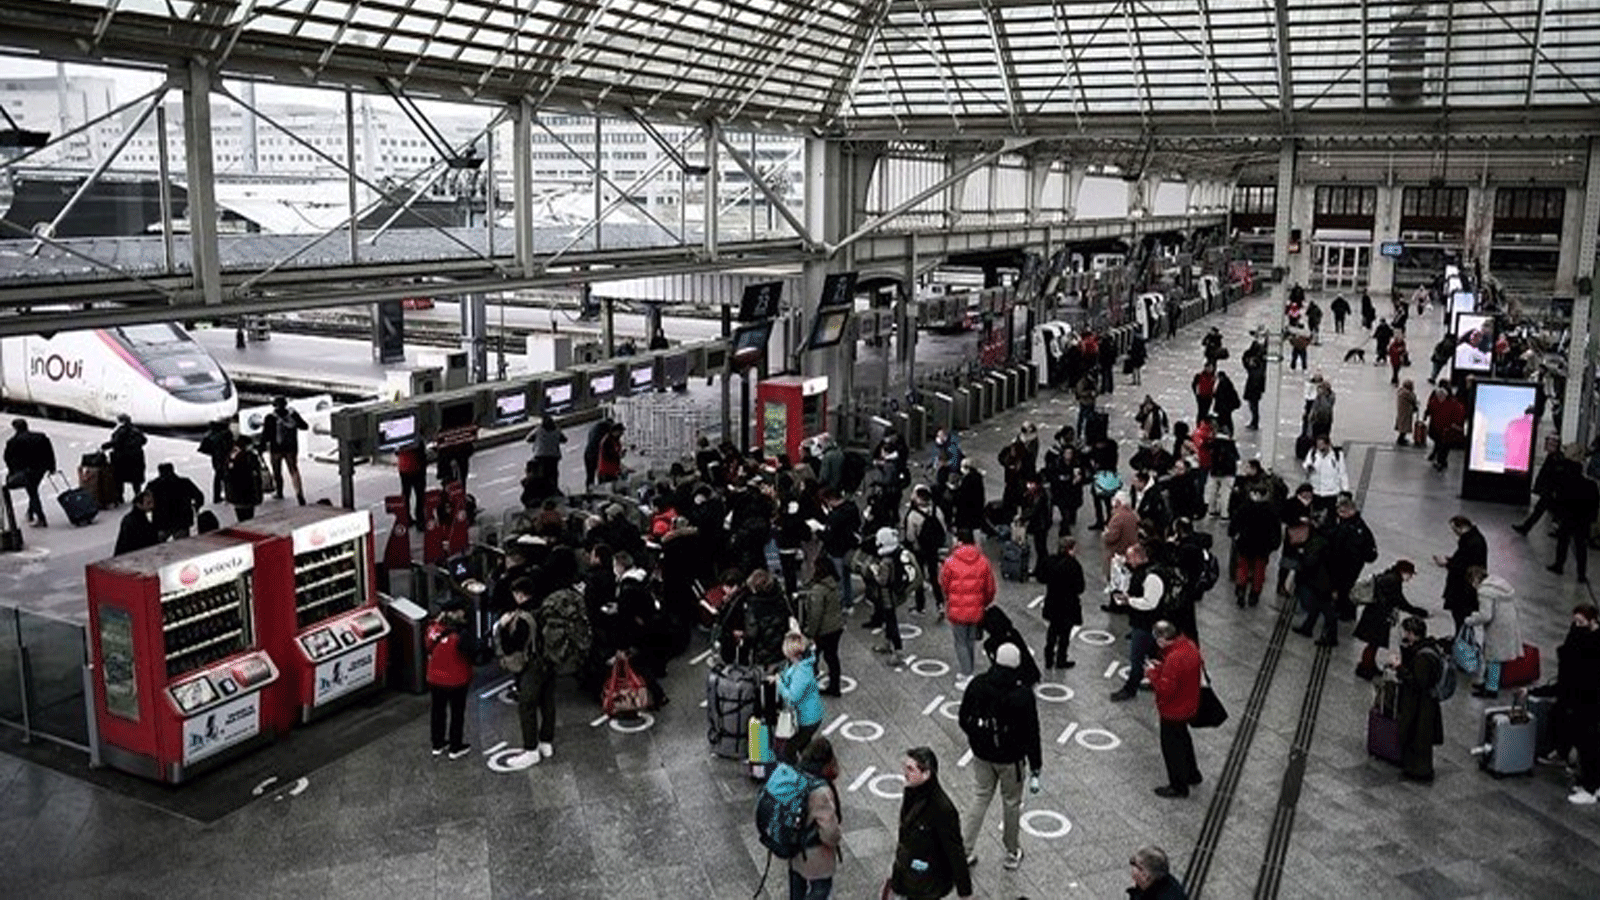 المسافرون ينتظرون في طابورهم لأخذ القطار في محطة Gare de Lyon في باريس